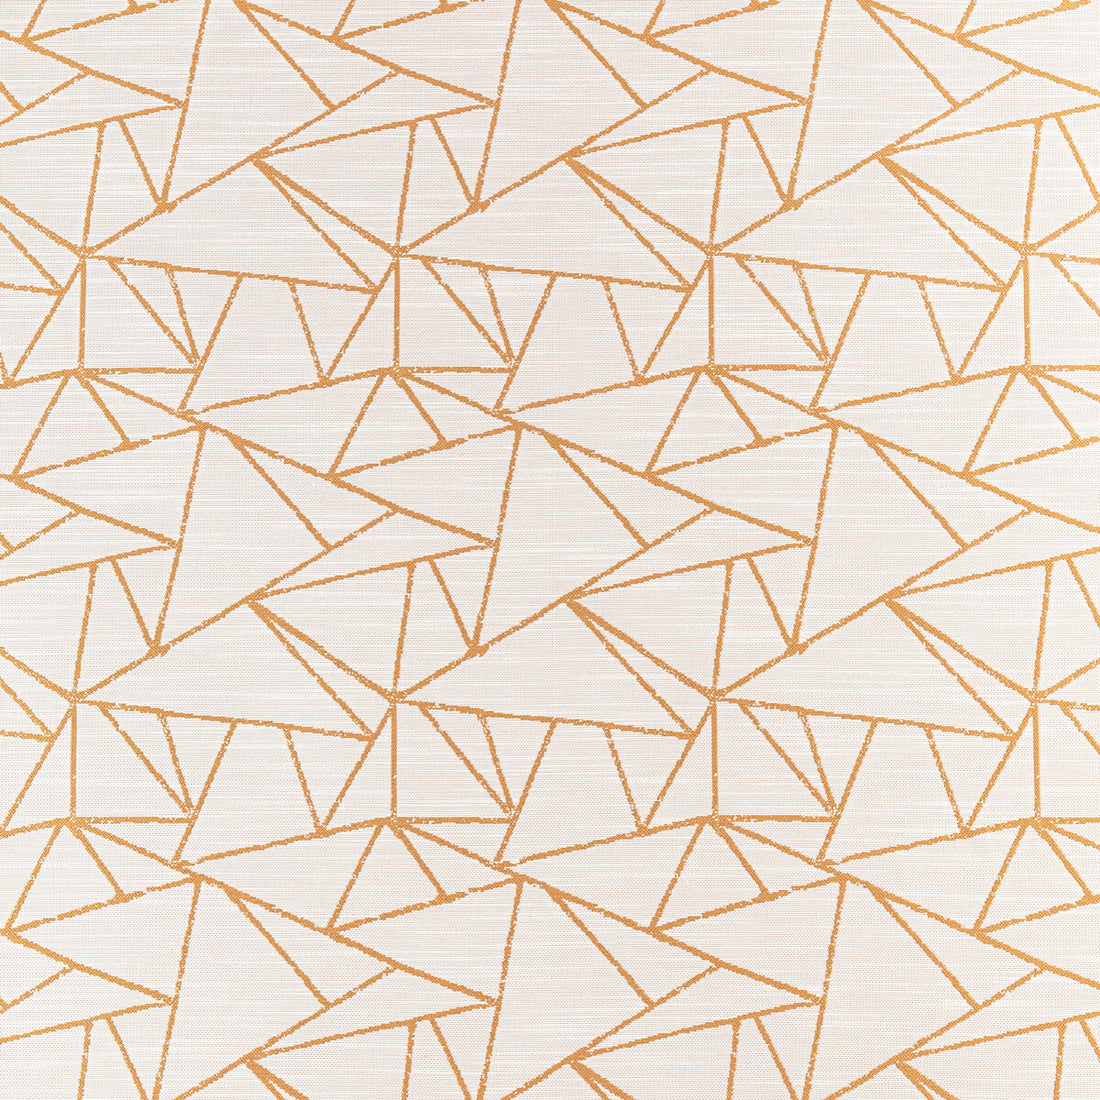 Kravet Design fabric in 36750-416 color - pattern 36750.416.0 - by Kravet Design